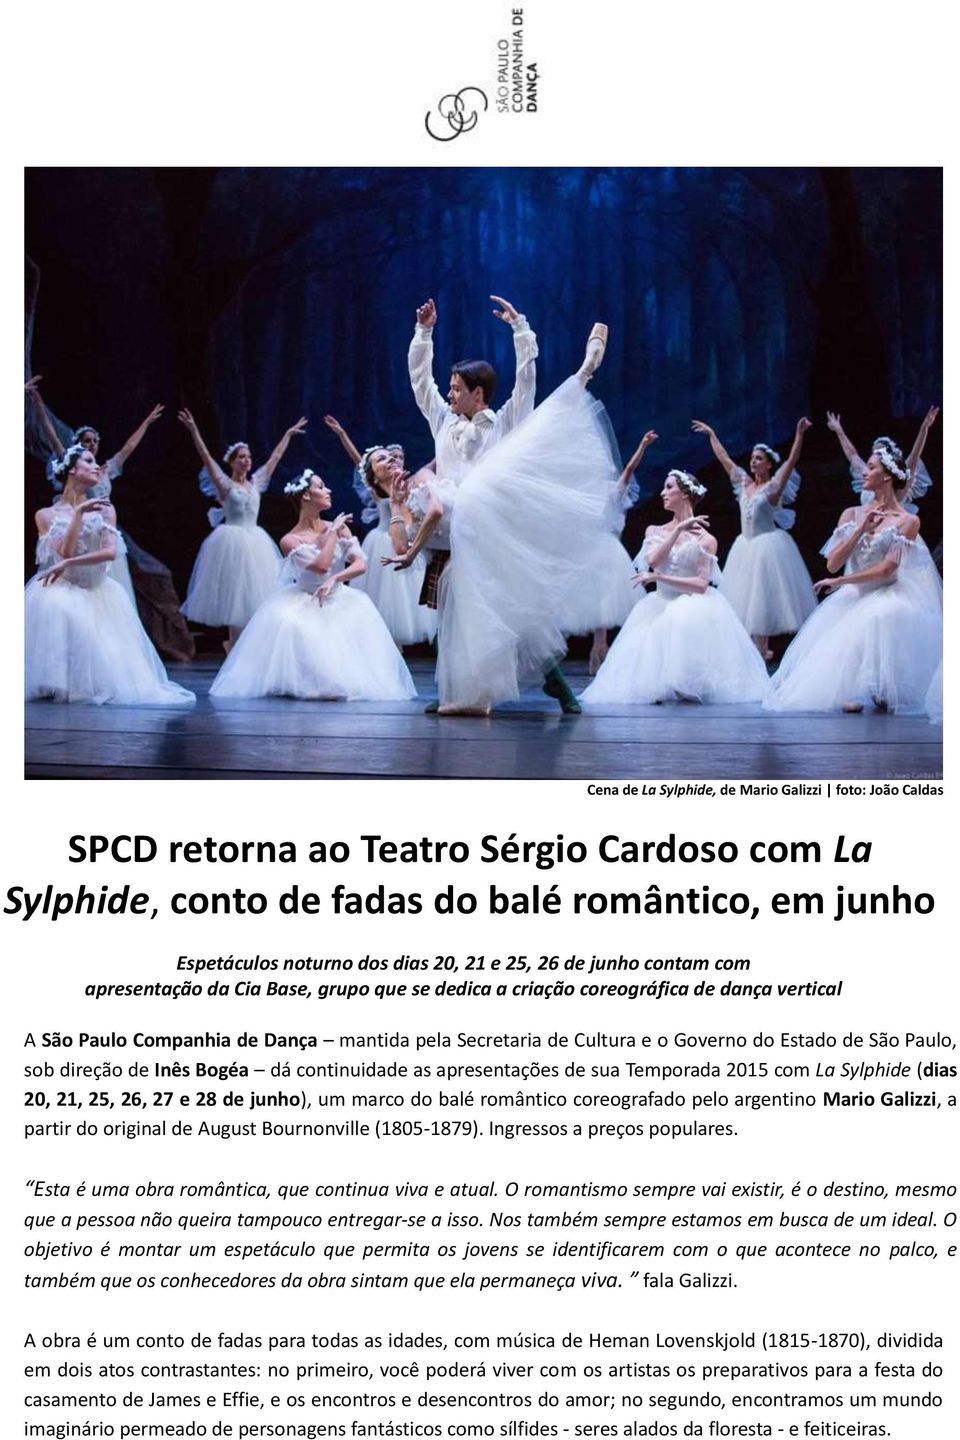 São Paulo, sob direção de Inês Bogéa dá continuidade as apresentações de sua Temporada 2015 com La Sylphide (dias 20, 21, 25, 26, 27 e 28 de junho), um marco do balé romântico coreografado pelo